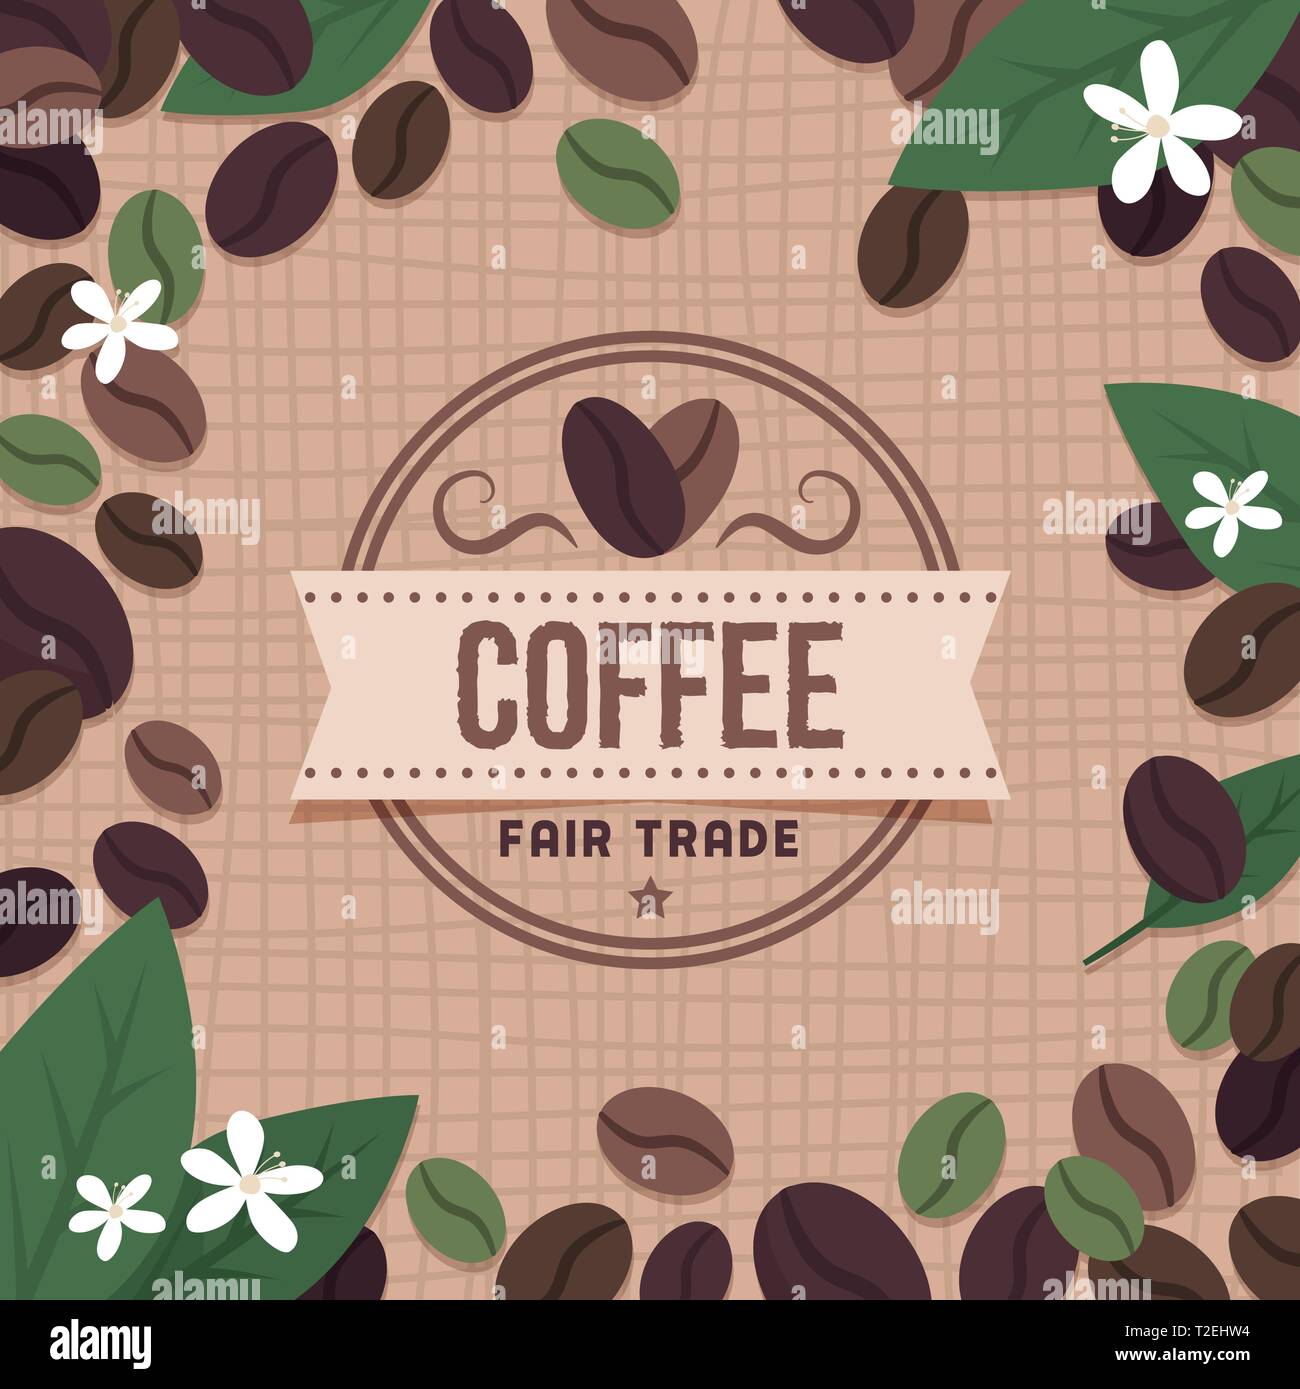 Fair trade Kaffee Marke mit Kaffeebohnen und Blumen Stock Vektor